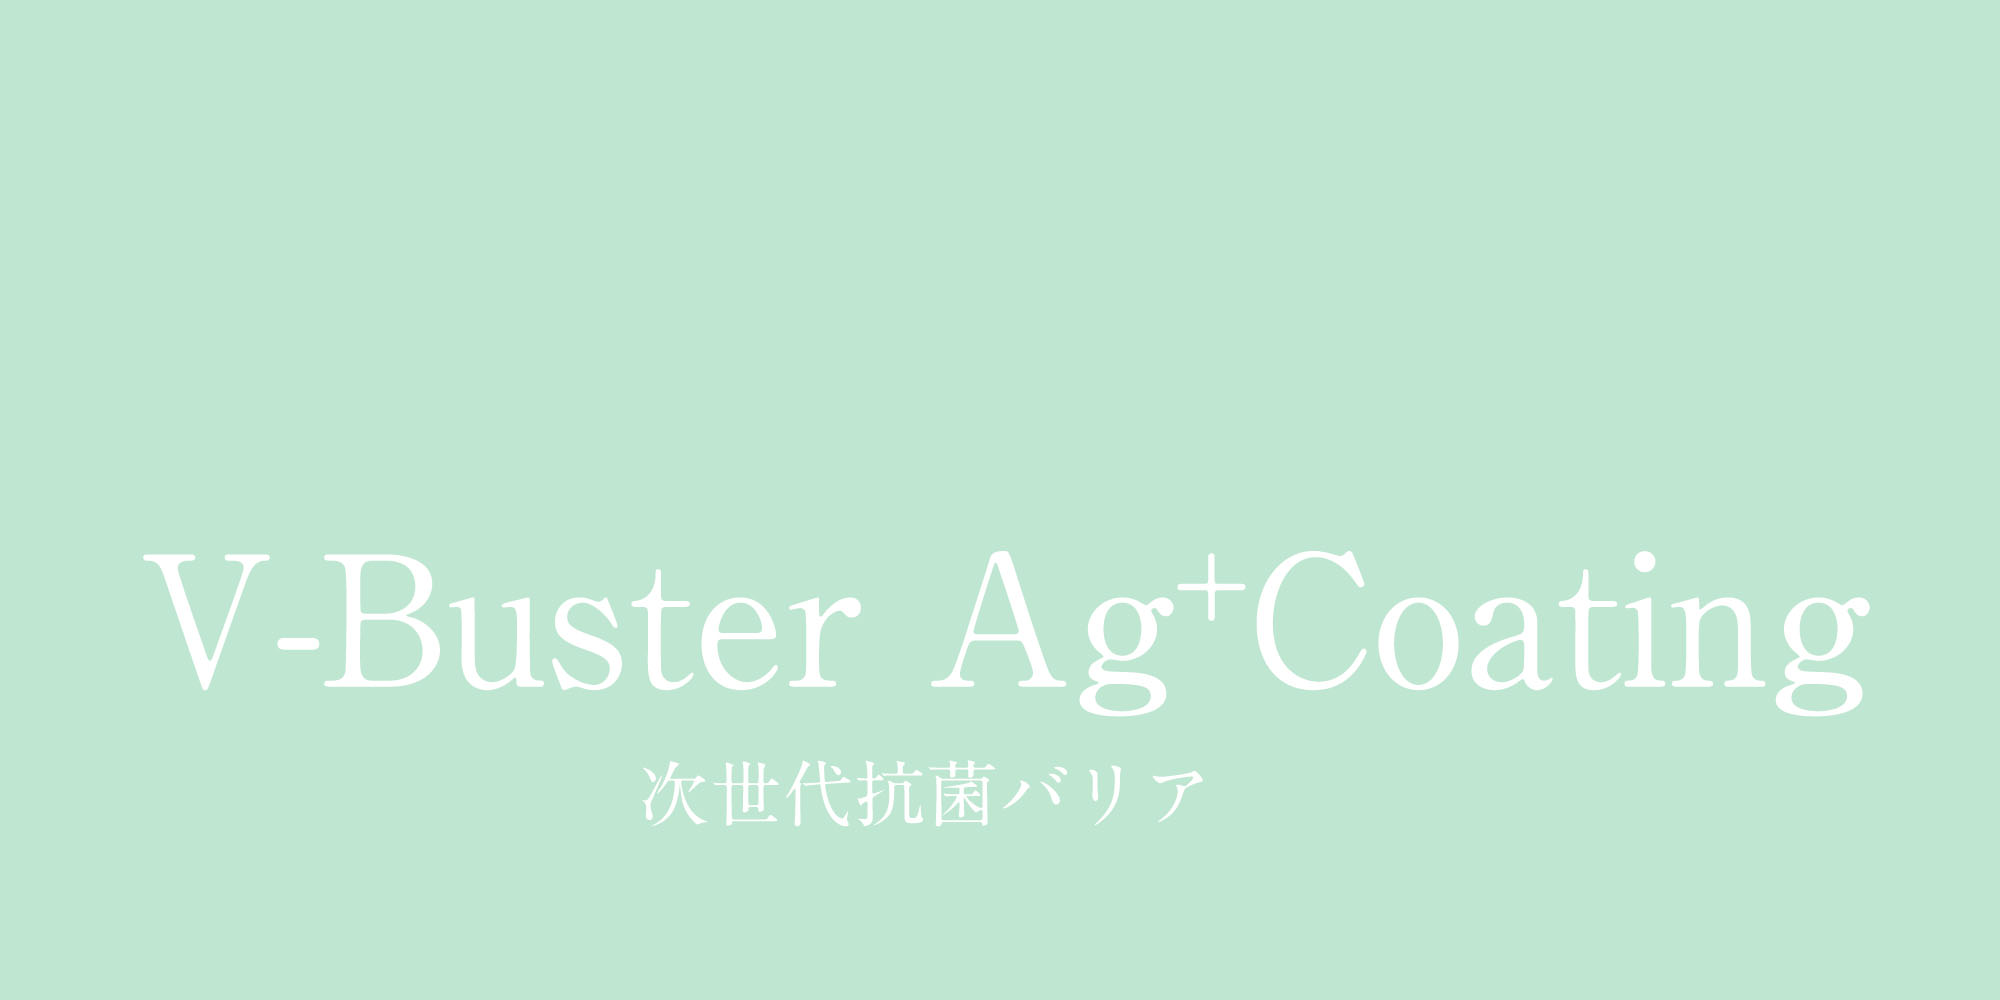 V-Buster Ag+Coating